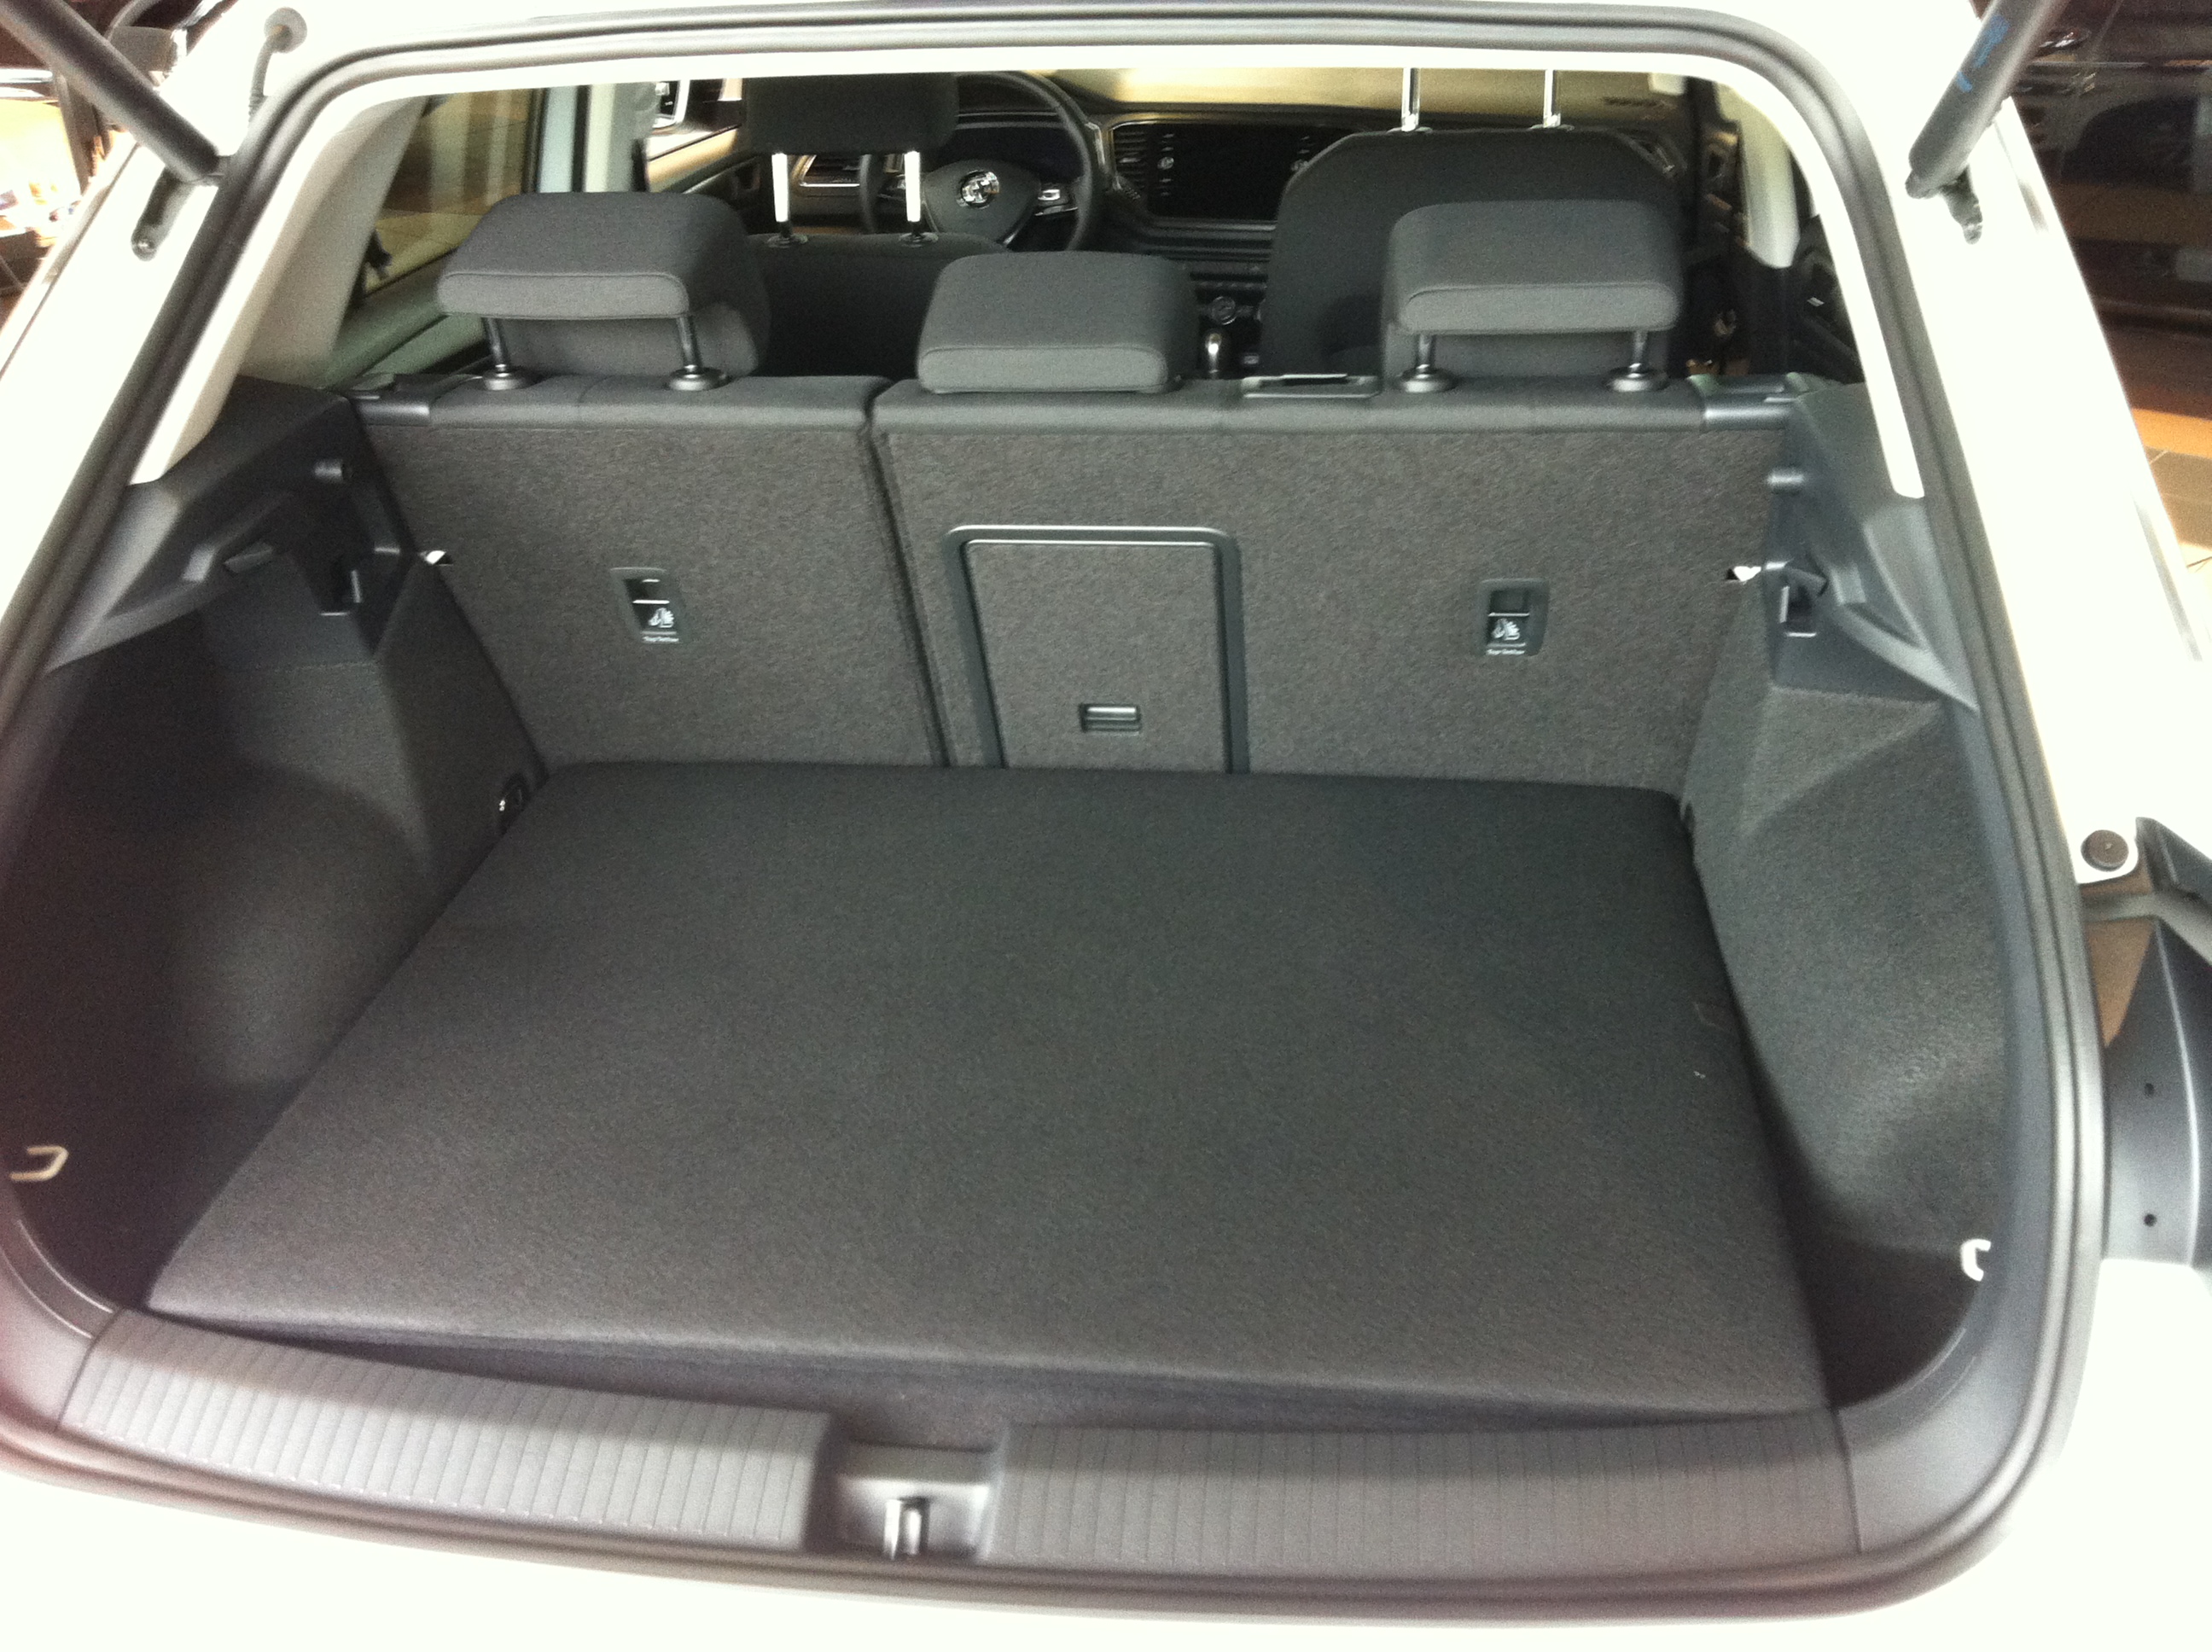 Kofferraumwanne mit Stoßstangenschutz für VW T-Roc ab 2017 (oben